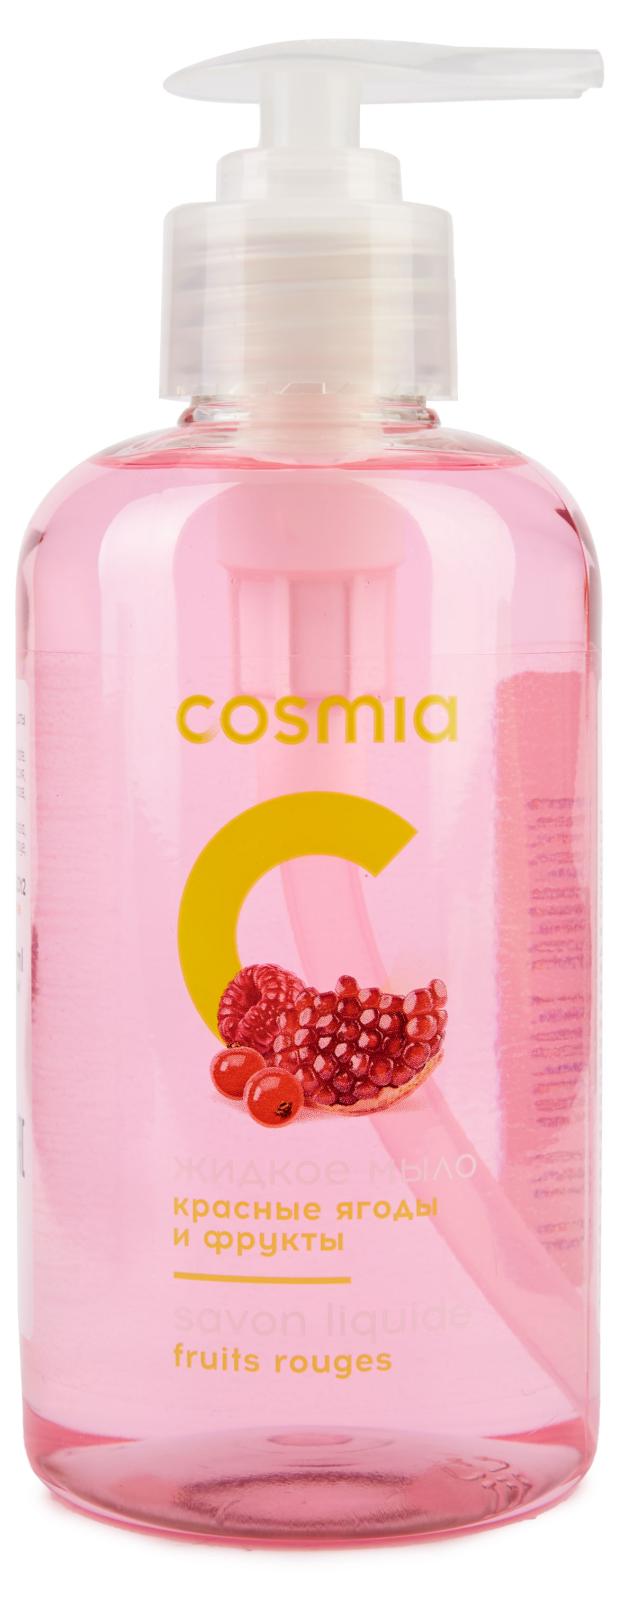 Жидкое мыло Cosmia с ягодами и фруктами, 300 мл